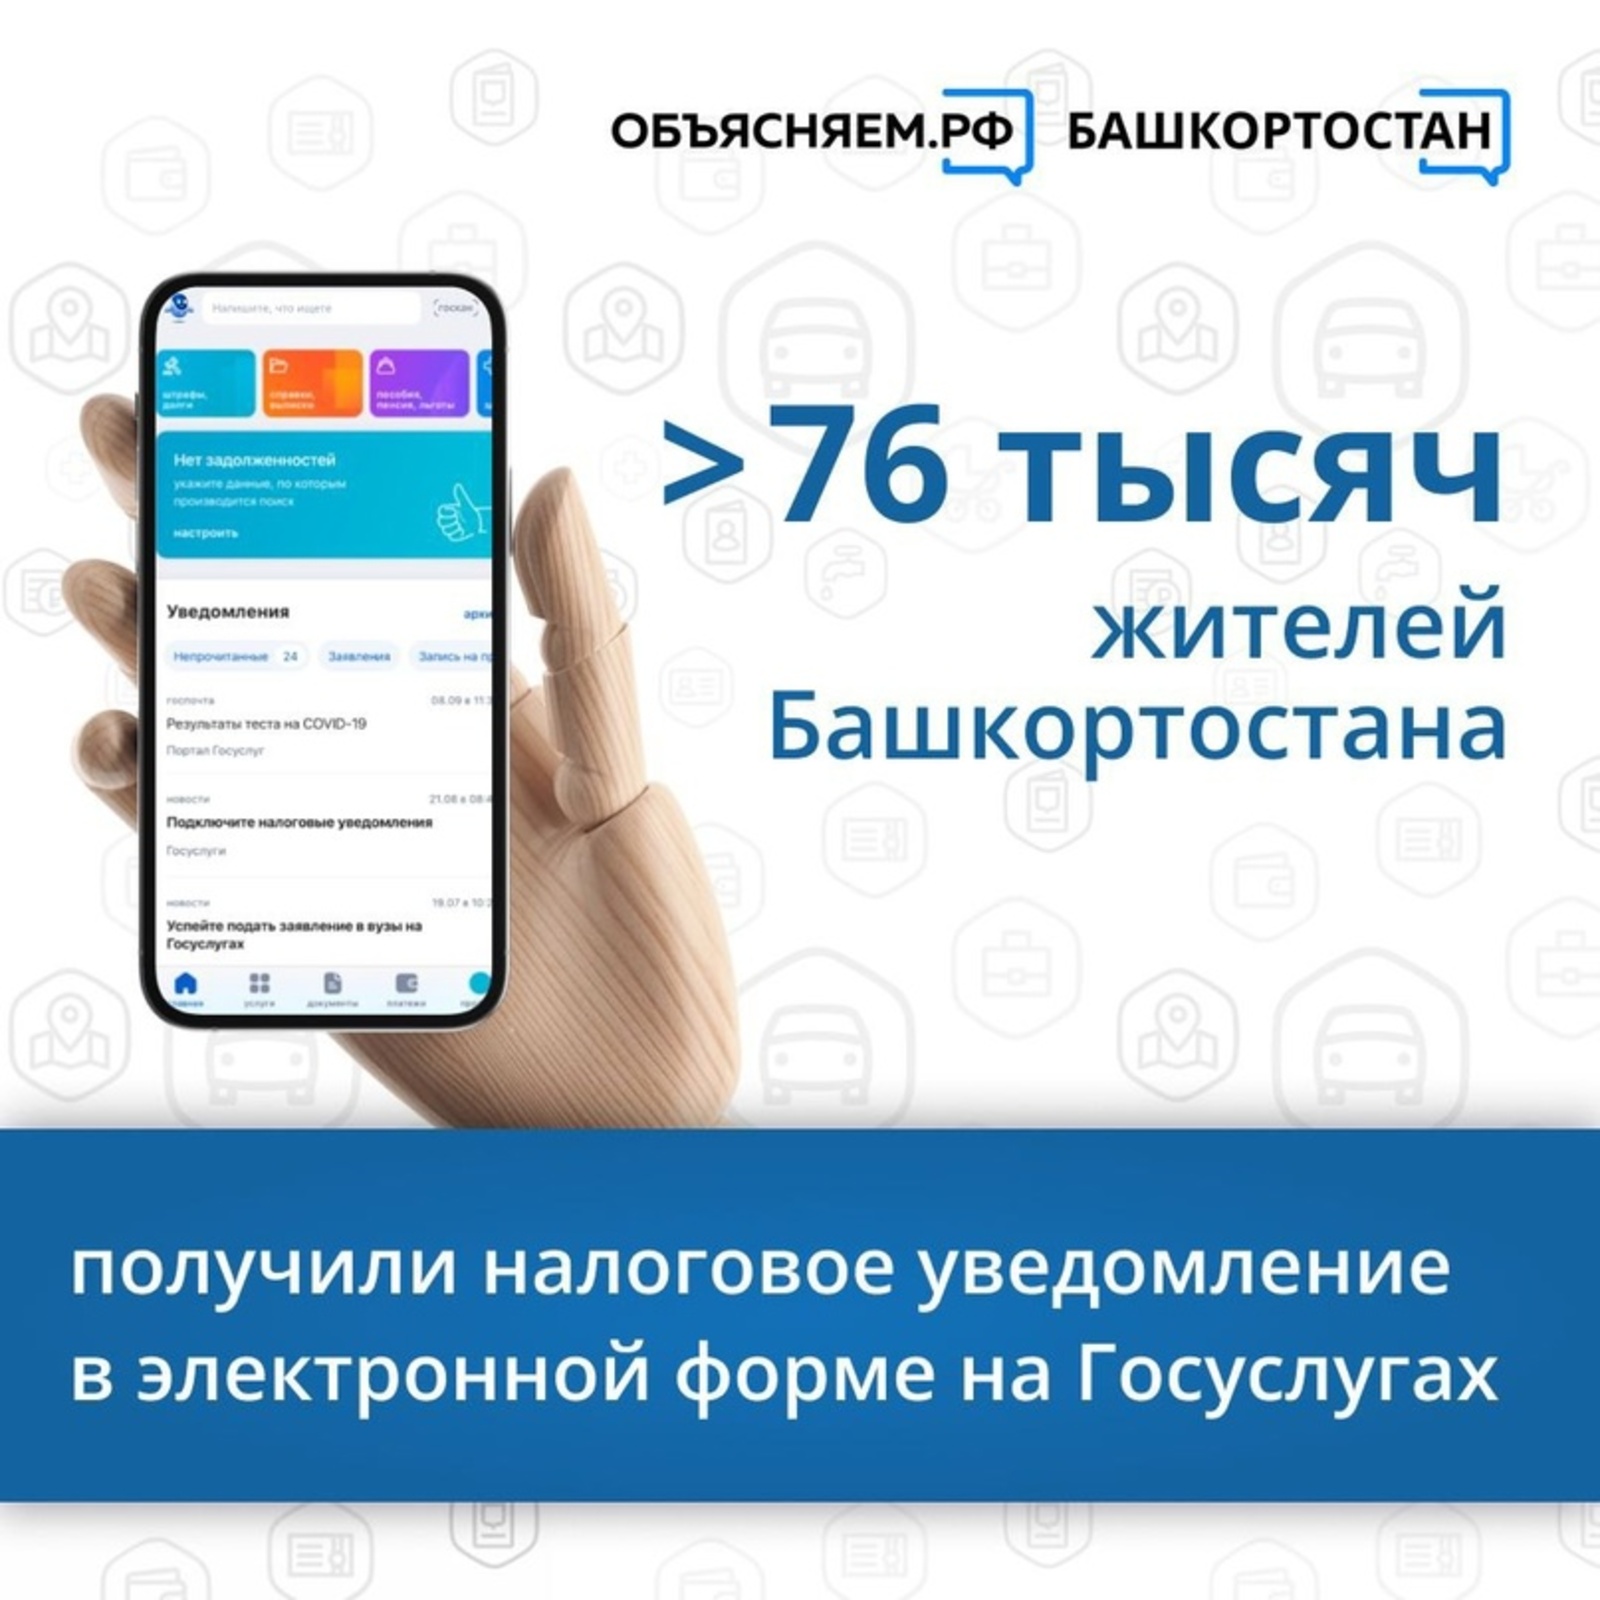 Более 76 тысяч жителей Башкирии получили налоговое уведомление в электронной форме на Госуслугах